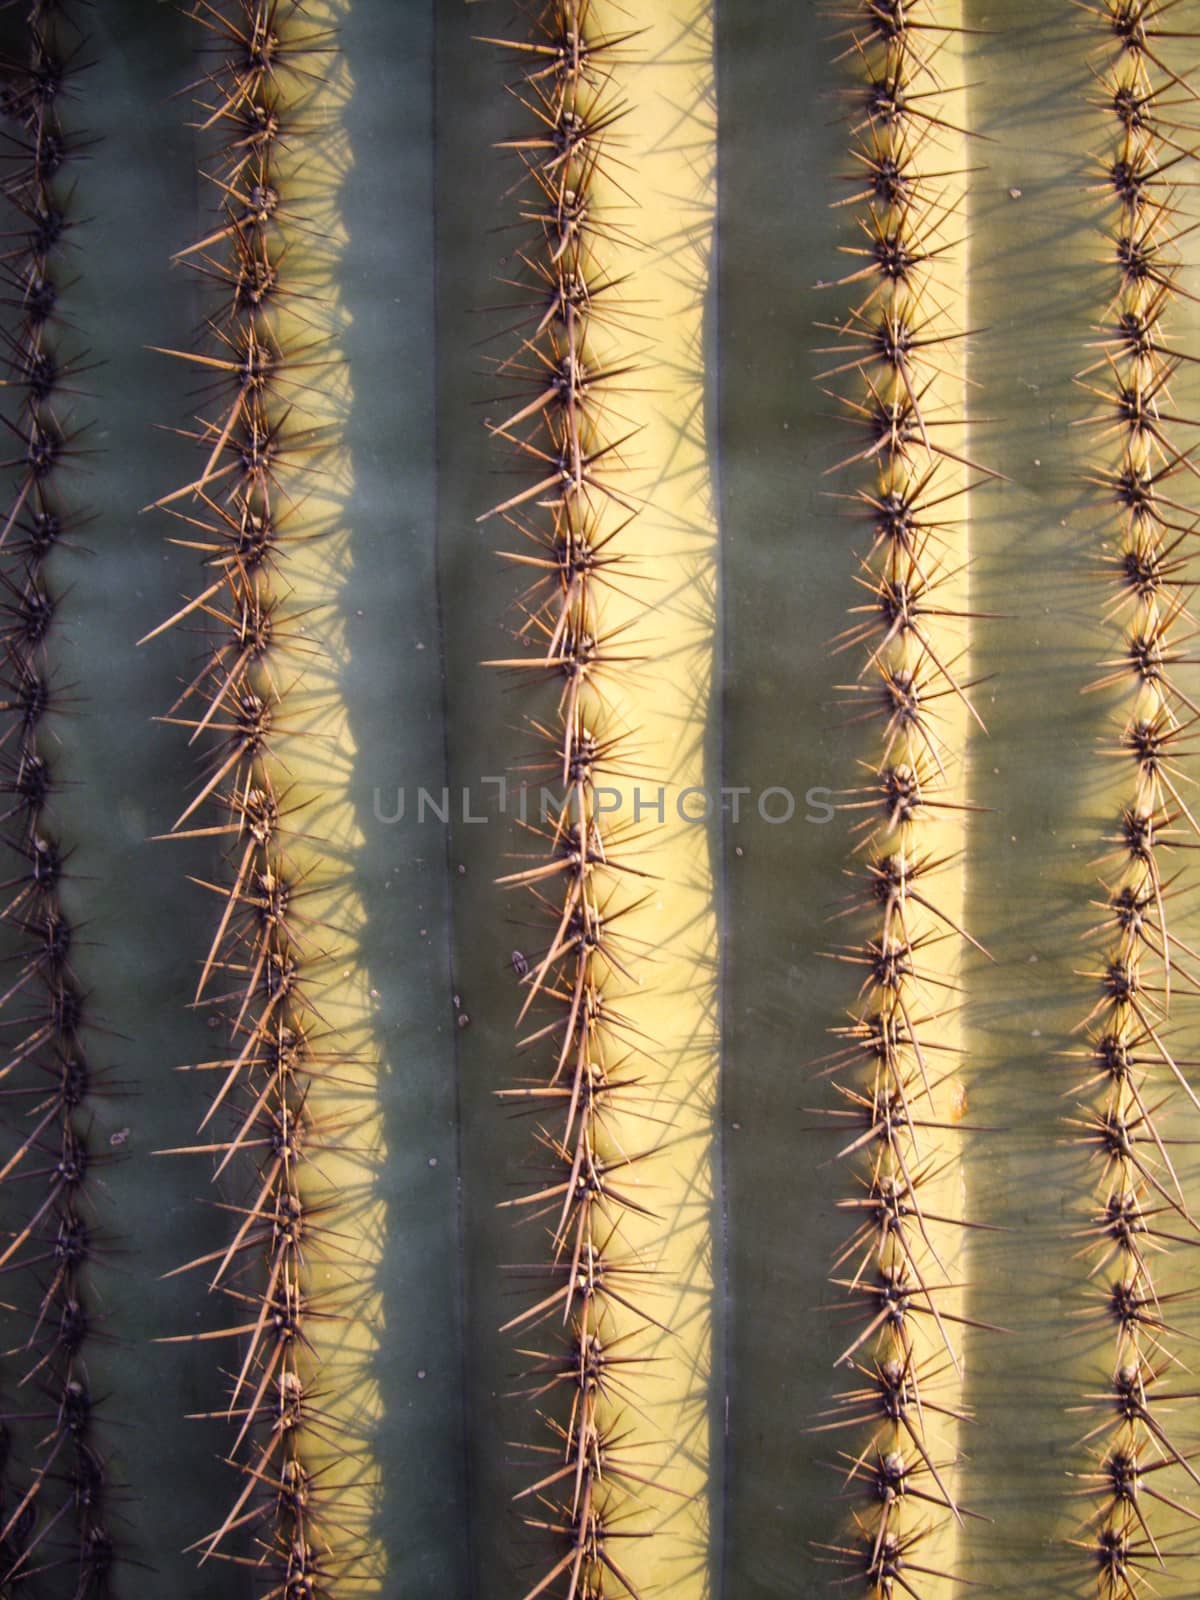 Saguaro Cactus  by emattil